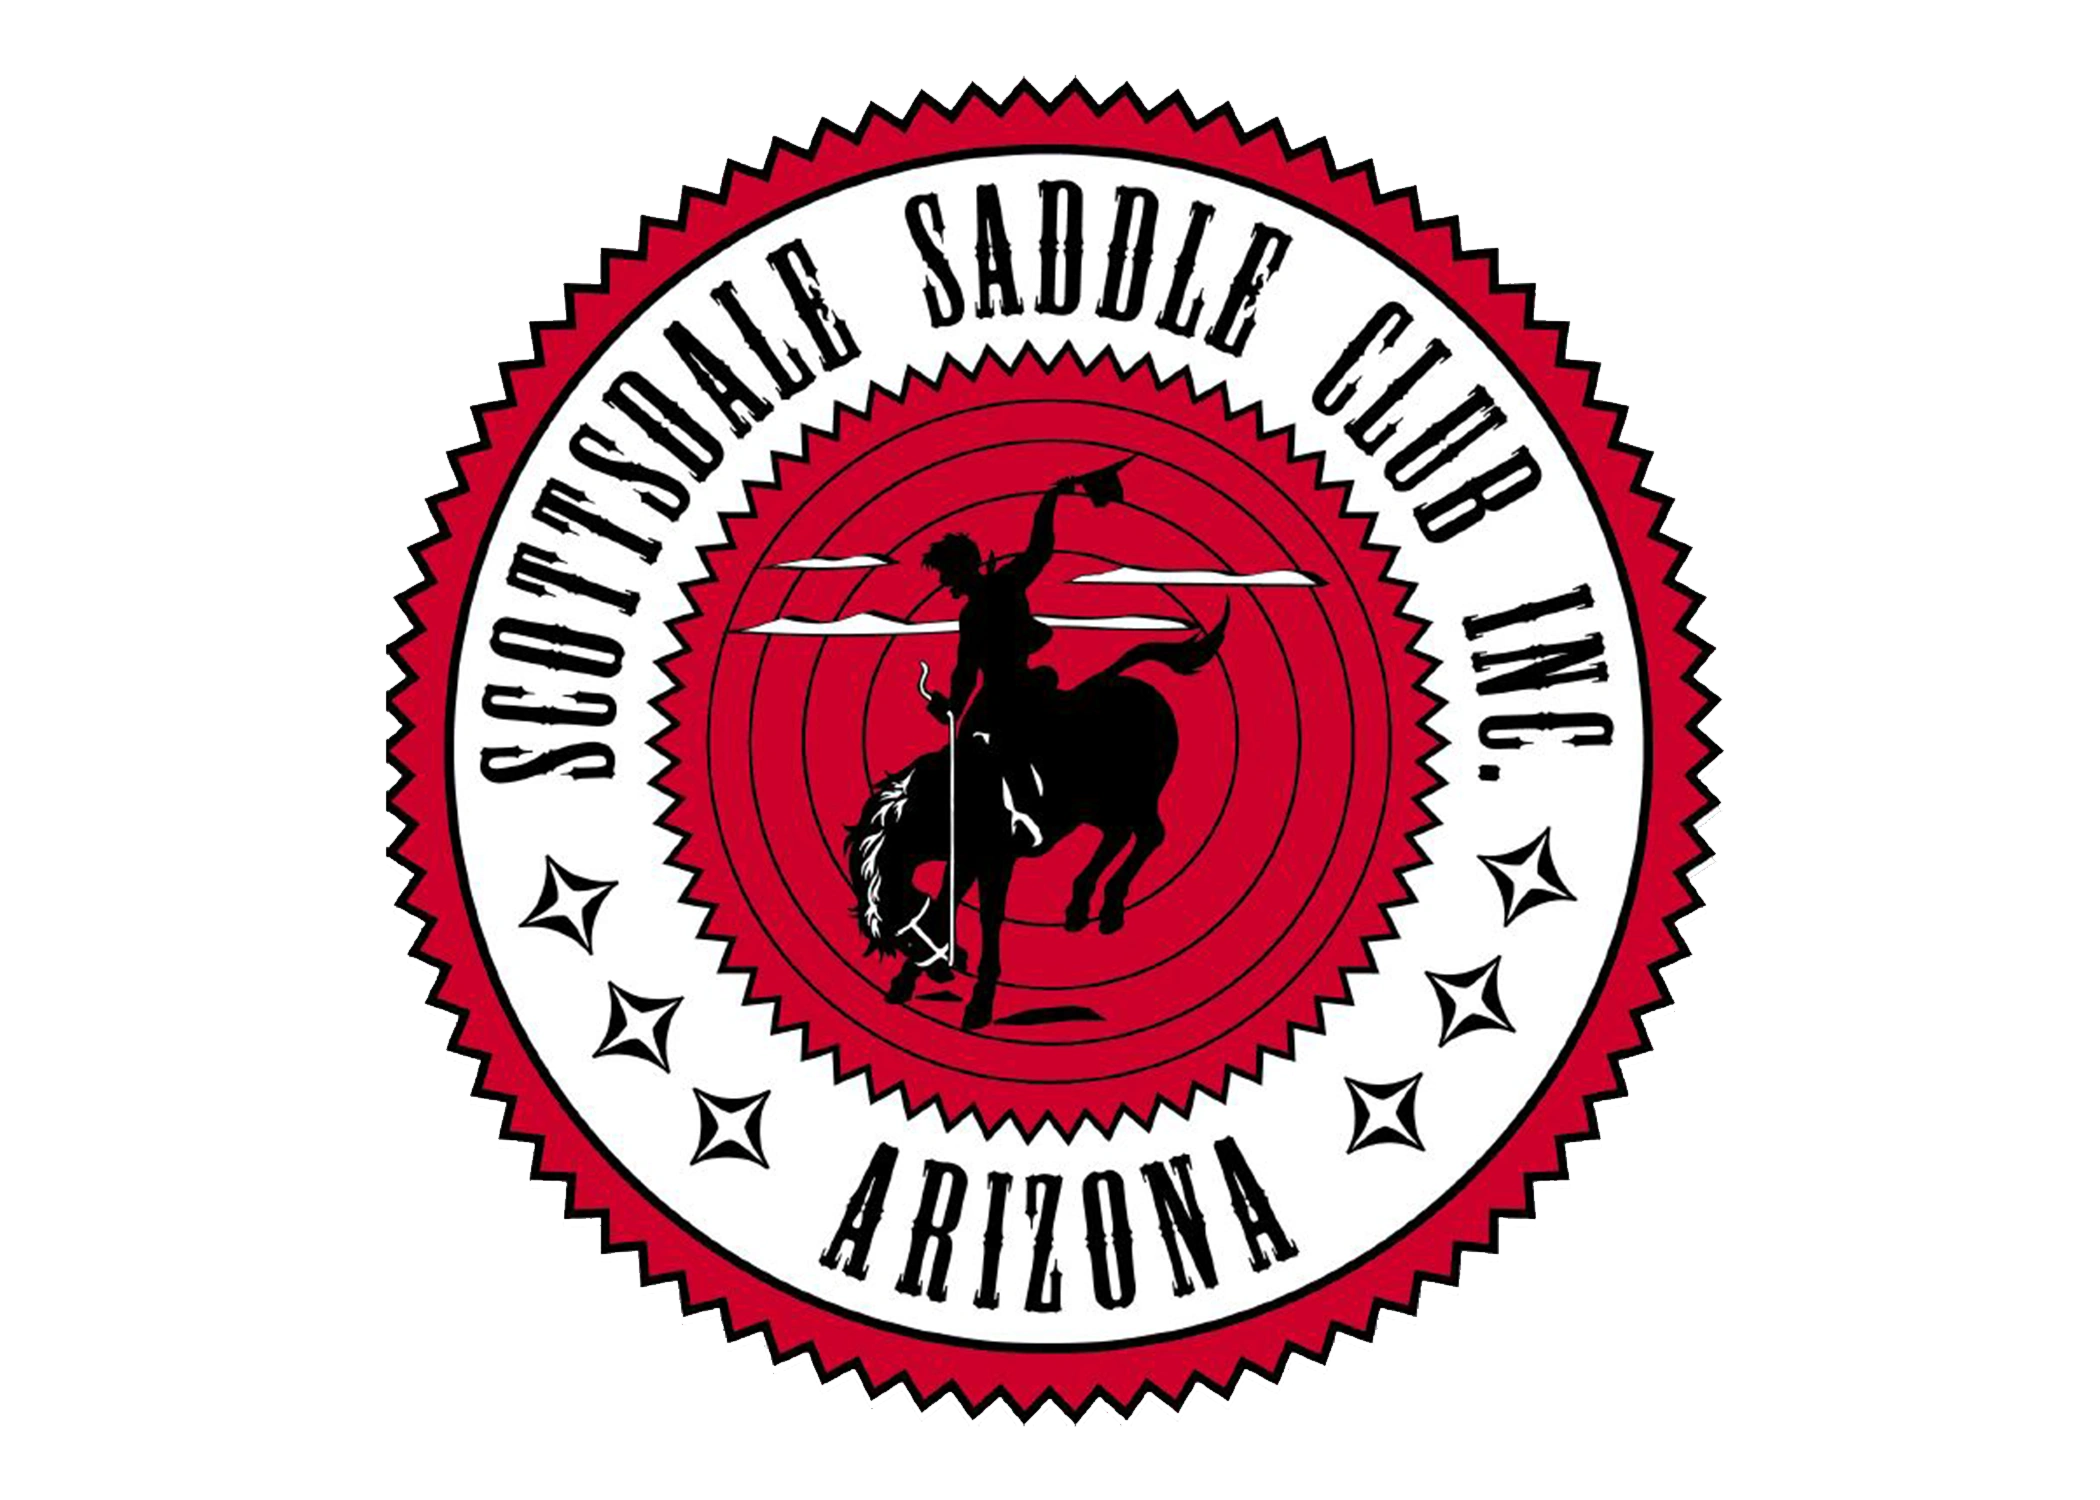 (c) Scottsdalesaddleclub.com